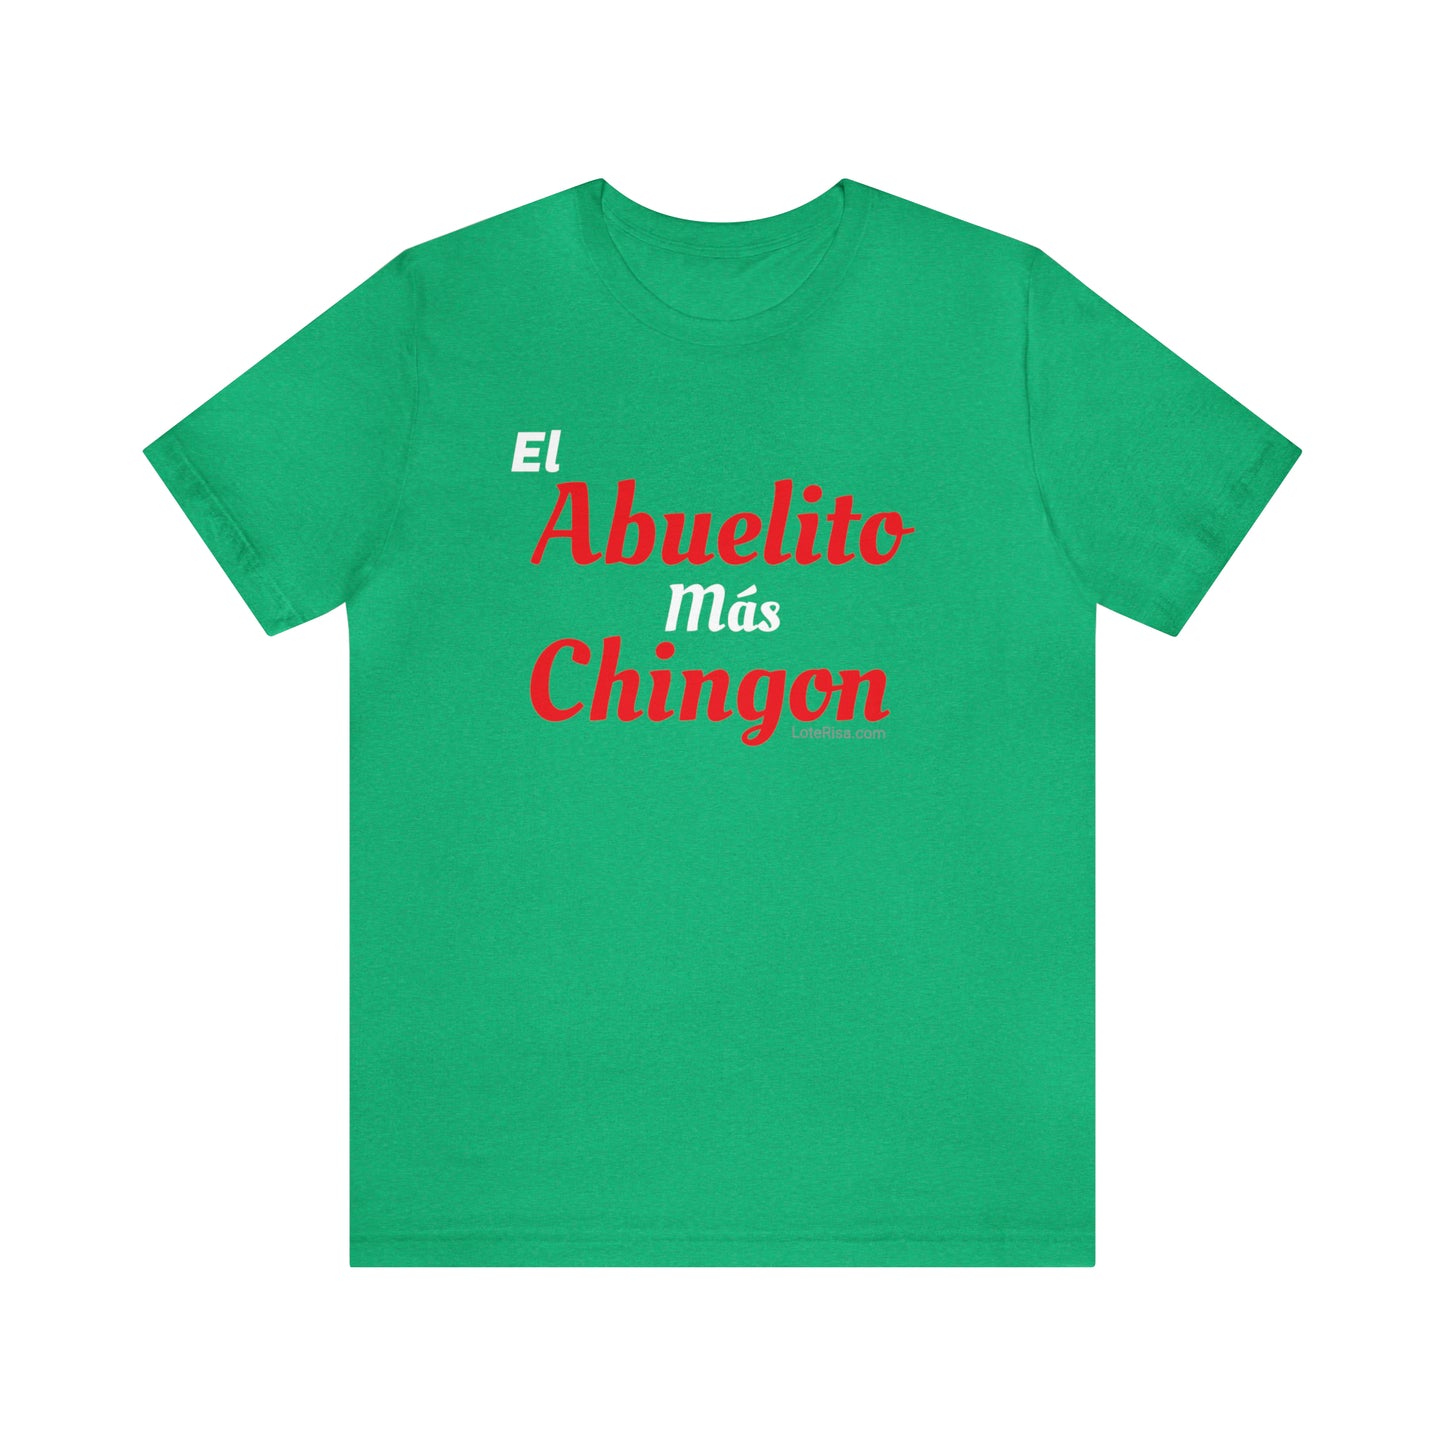 El Abuelito Mas Chingon T-Shirt